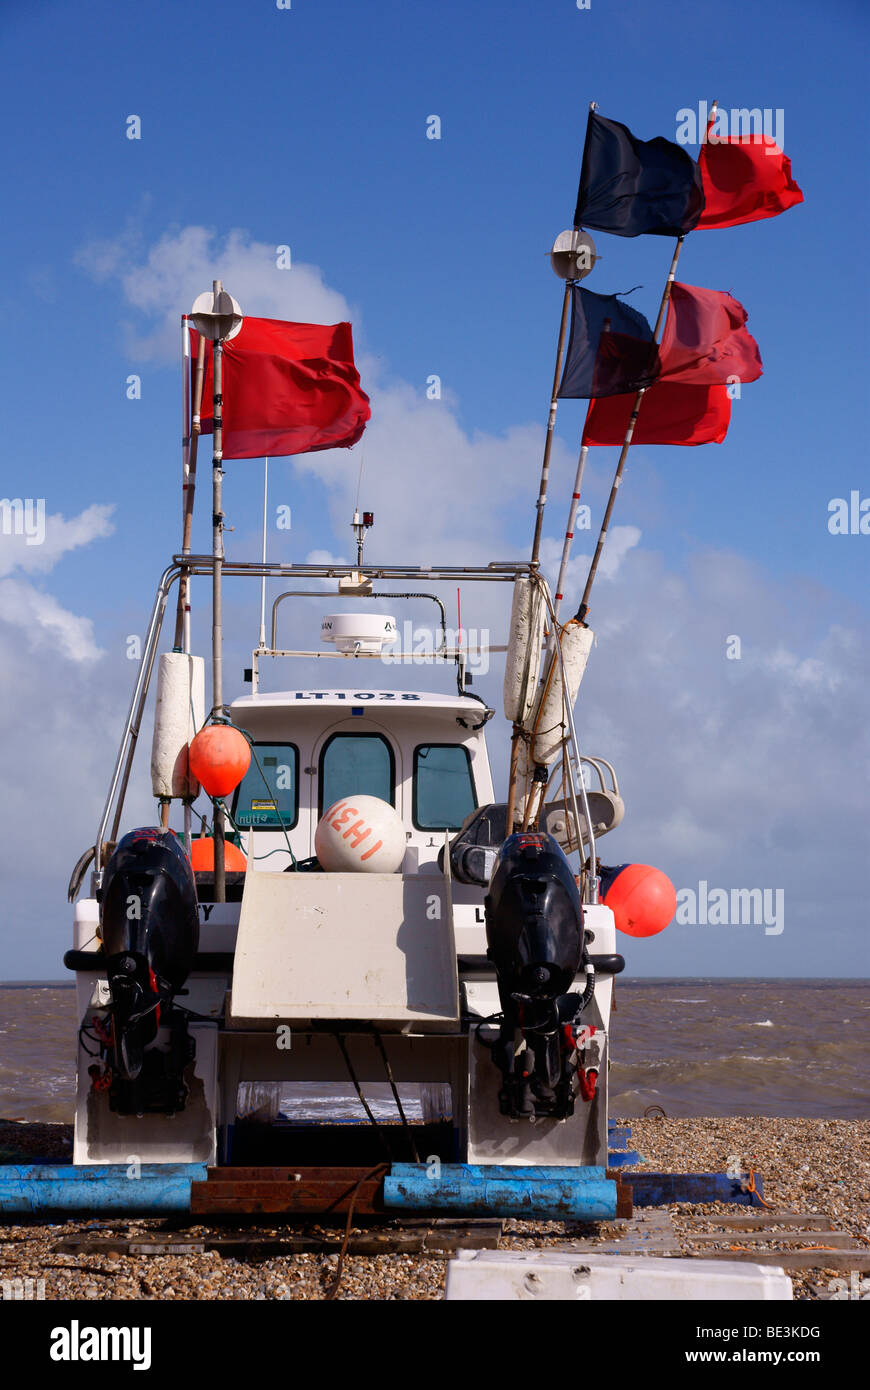 Angelboot/Fischerboot mit Lobster Pot Markierungsfahnen flattern bei starkem Wind am Strand von Aldeburgh Stockfoto